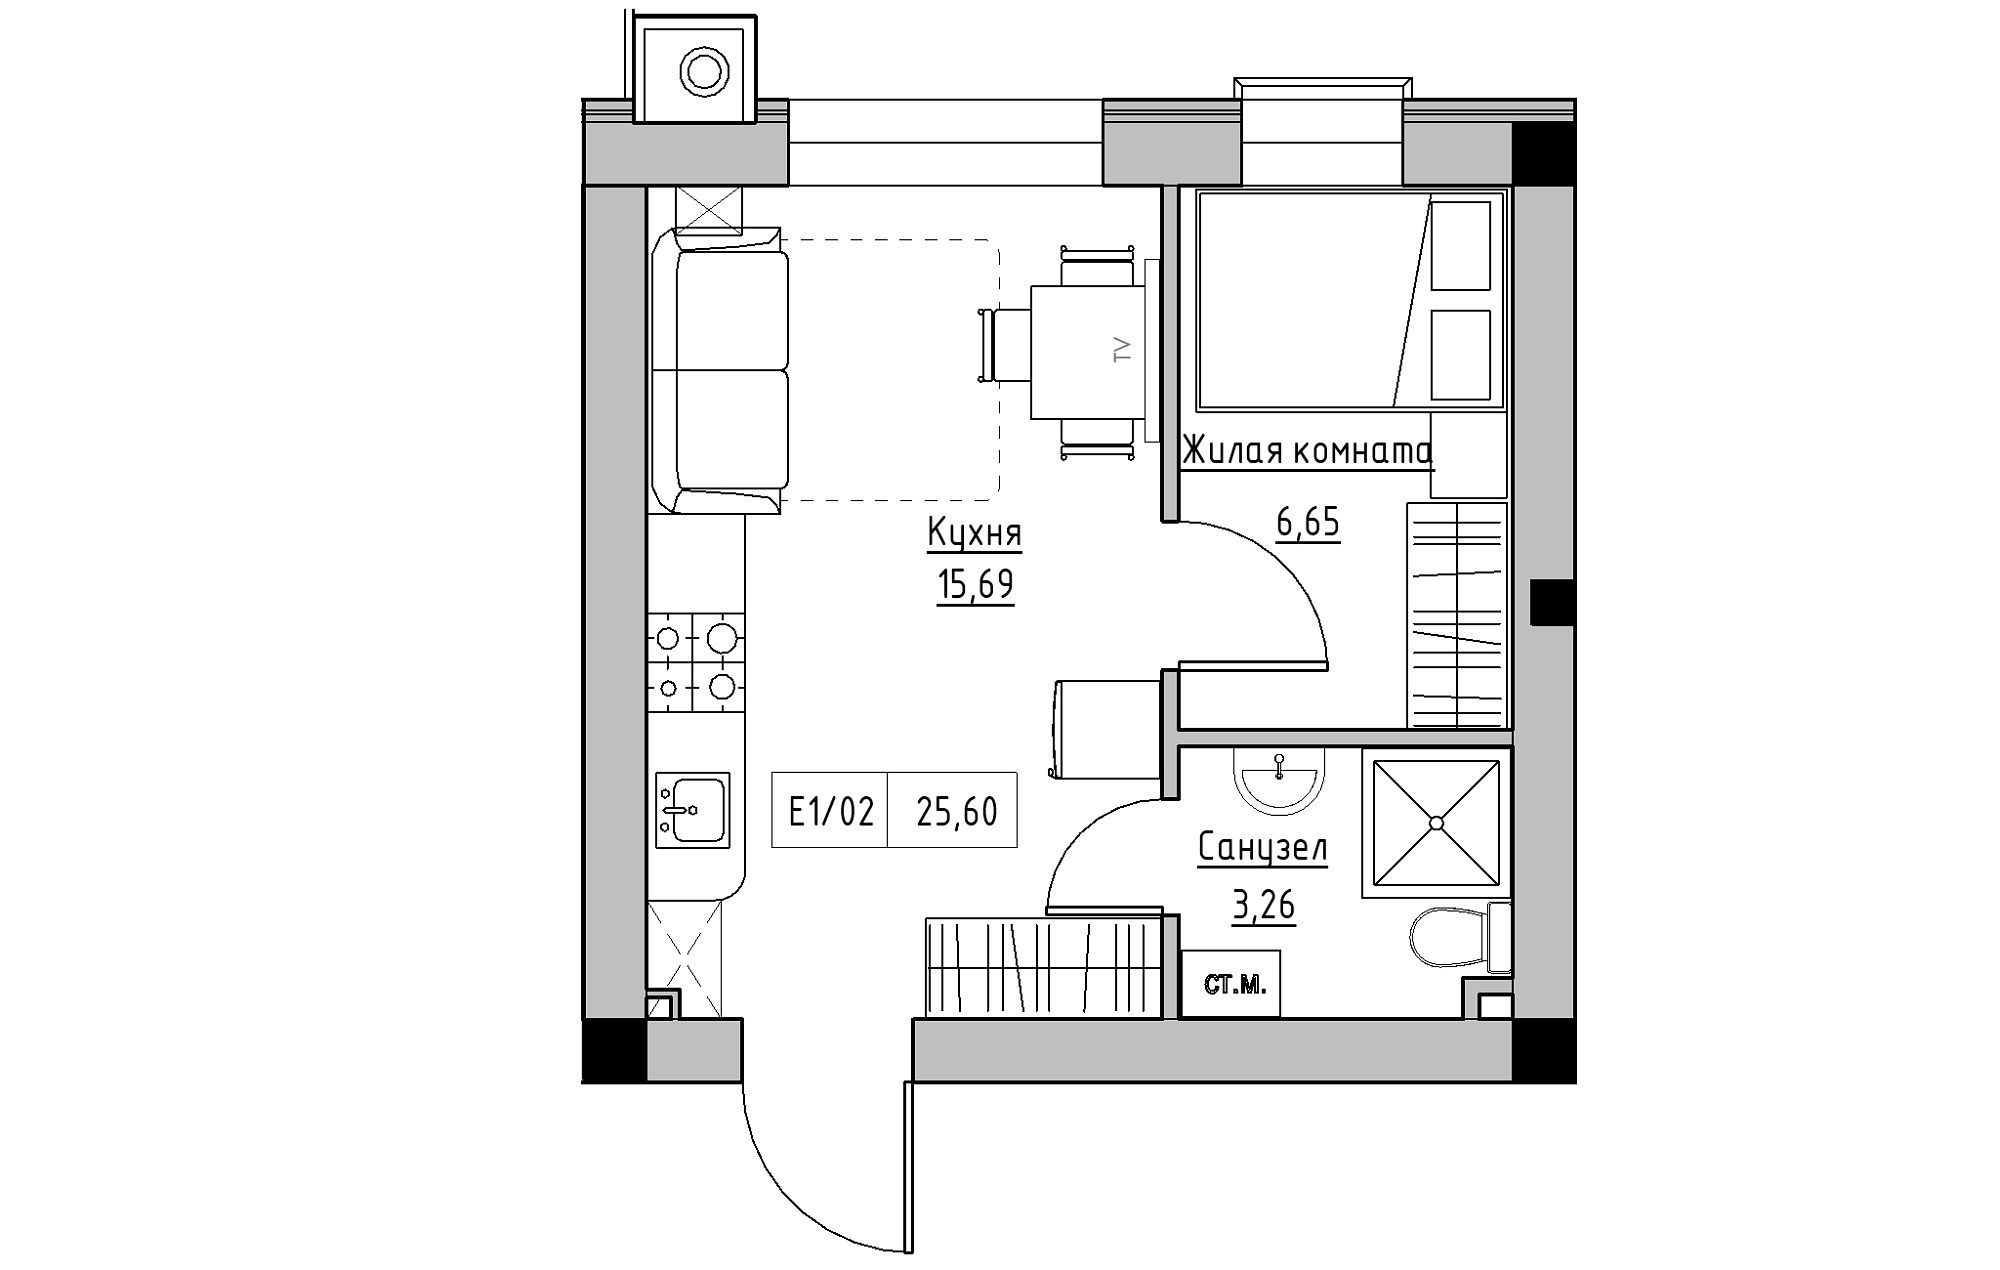 Планування 1-к квартира площею 25.6м2, KS-013-05/0013.